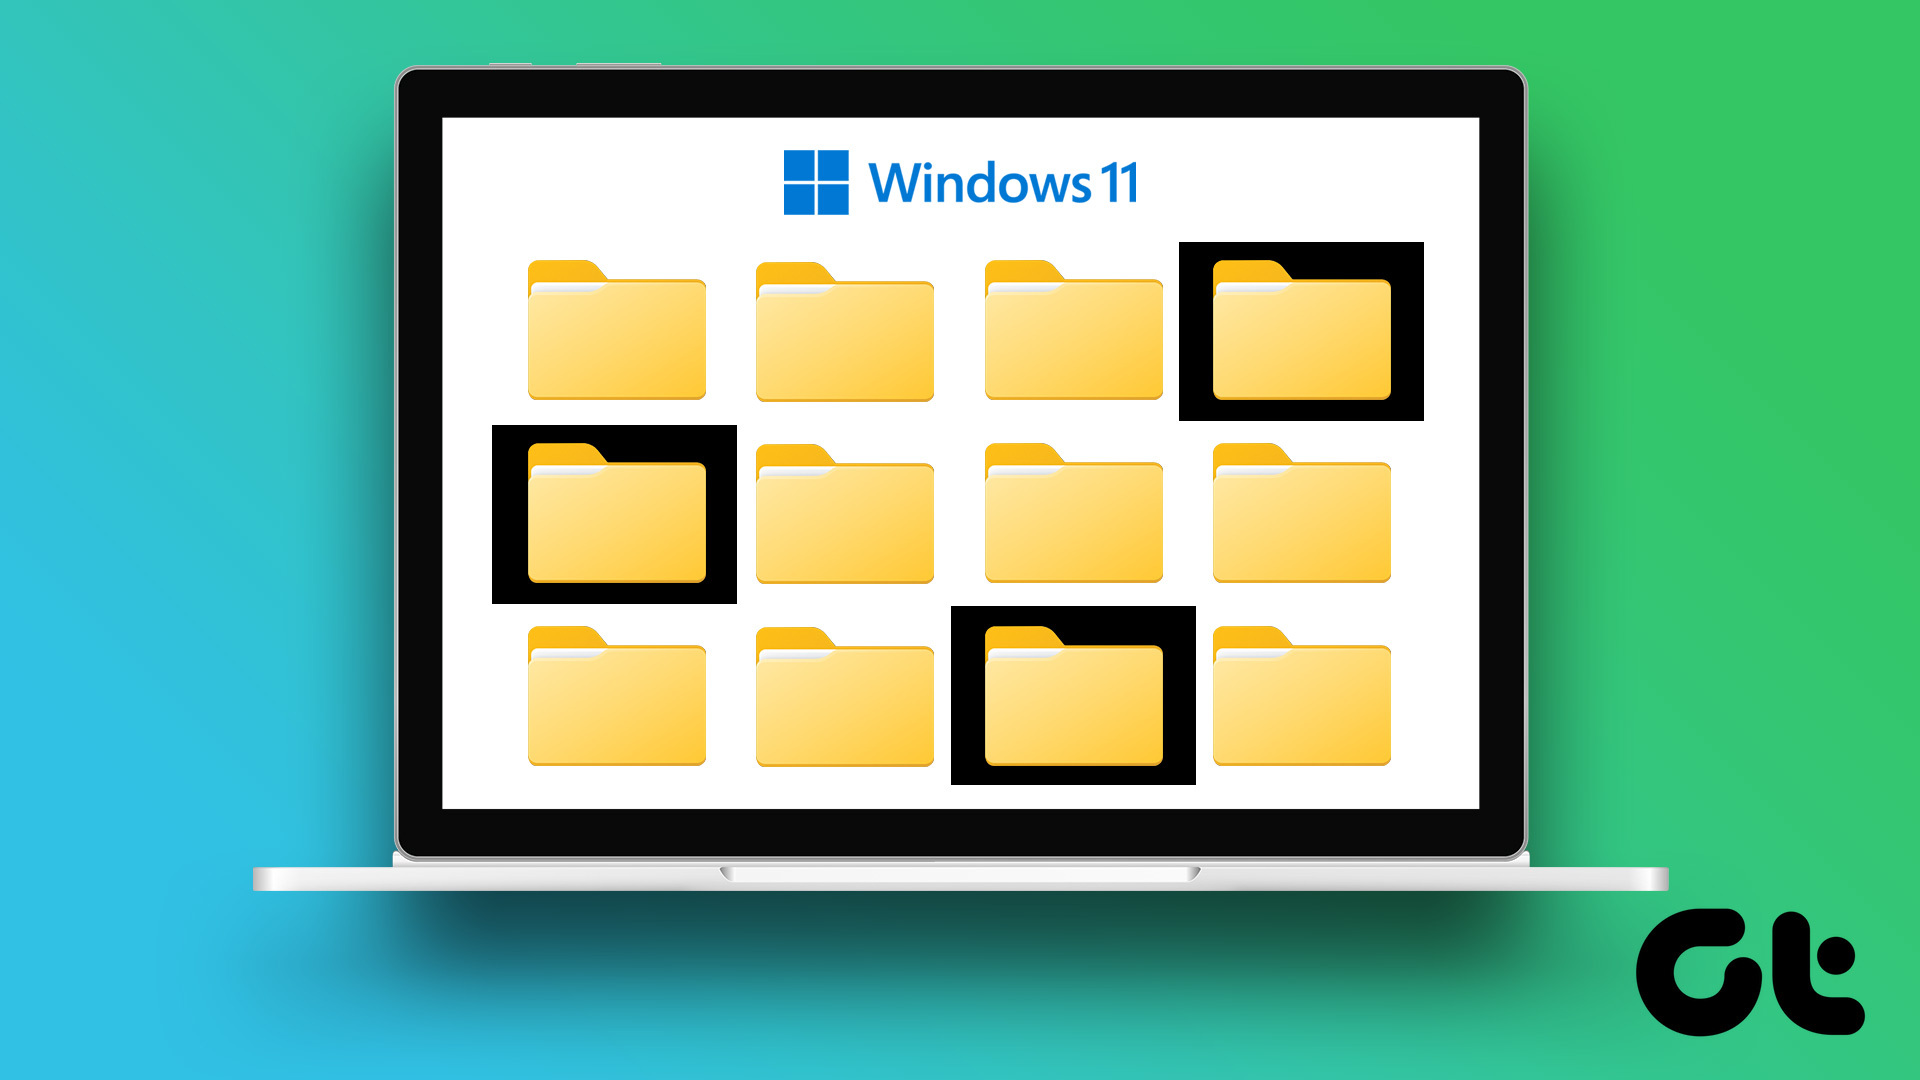 Sửa lỗi nền đen cho biểu tượng tại Windows 11 Kho lưu trữ. Chúng tôi hiểu rằng việc này có thể rất phiền phức và gây khó chịu, nhưng đừng lo lắng, chỉ cần xem hình ảnh liên quan đến từ khóa này, bạn sẽ tìm thấy các giải pháp để khắc phục tình trạng đó. Translation: Fix the black background for icons in Windows 11 Storage. We understand that this can be very annoying and frustrating, but don\'t worry, just check out the image related to this keyword, and you\'ll find solutions to fix the problem.